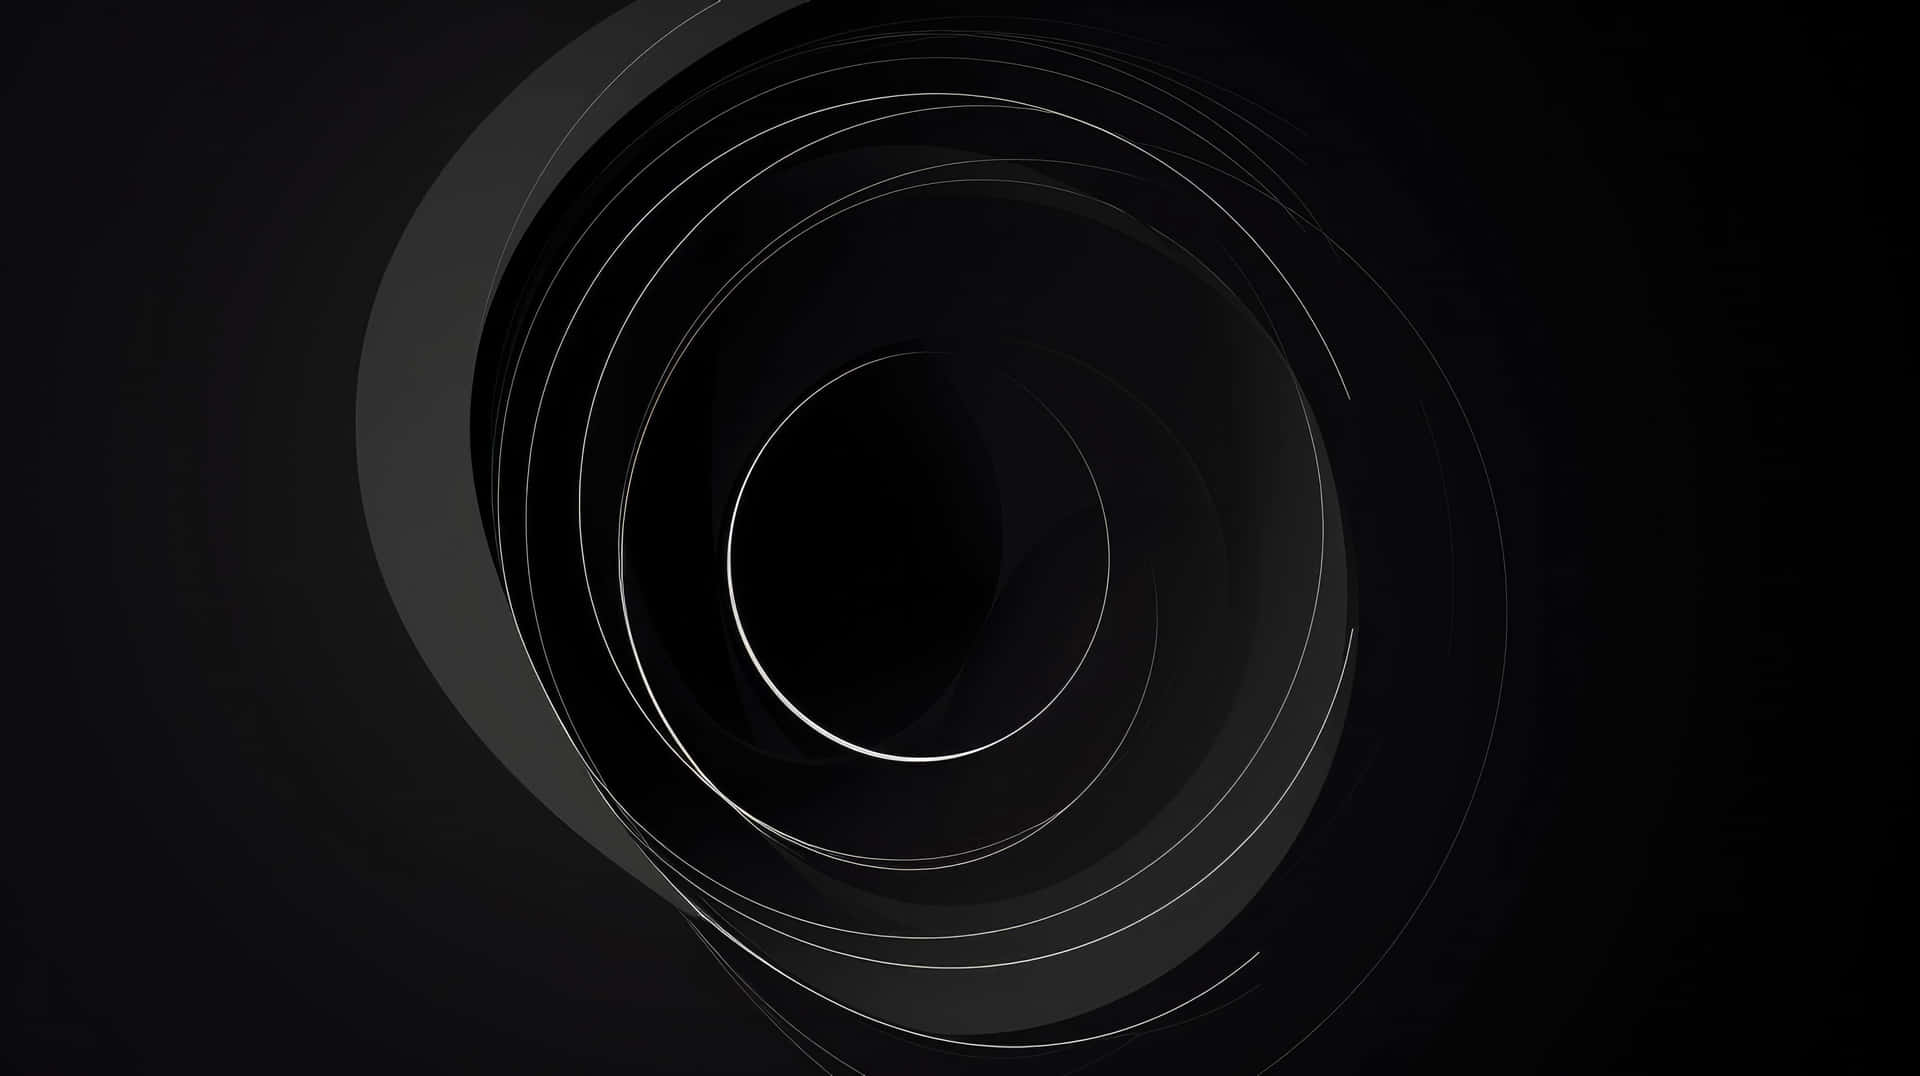 Abstract Black Circle Design Wallpaper